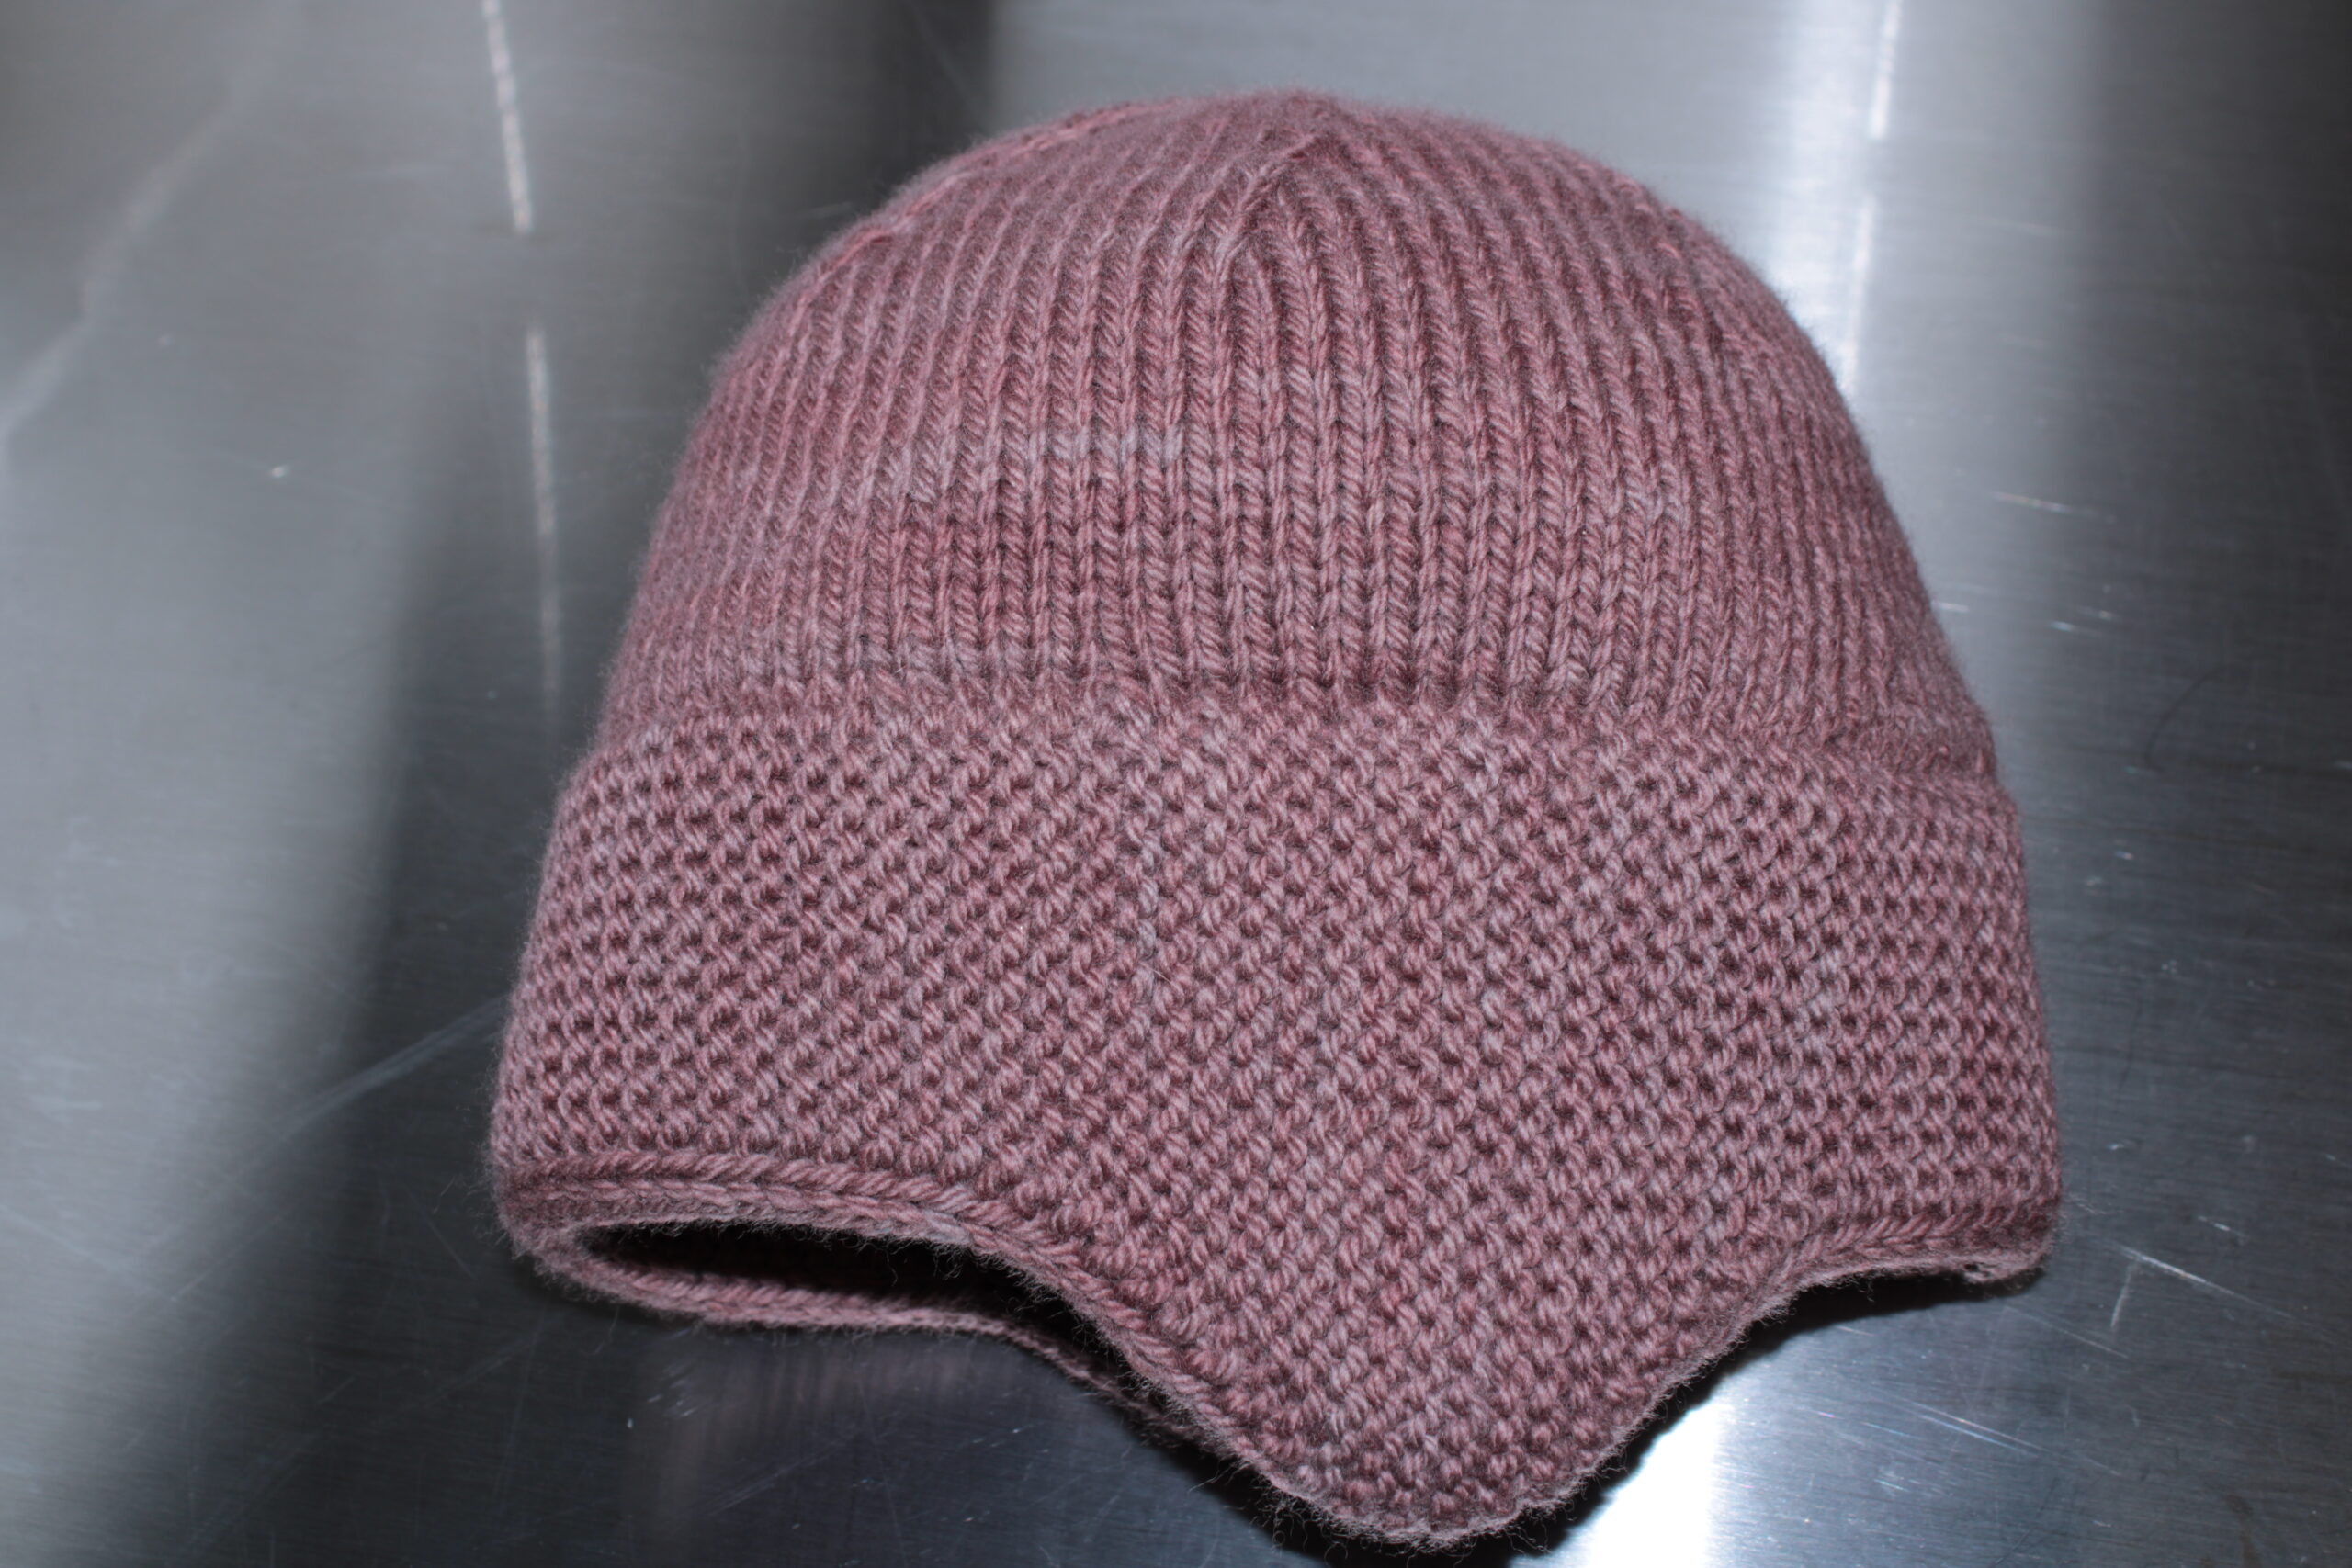 Beginner Knit Kit, Beanie Knitting Kit, Hat Knitting Kit, Beanie Knit Hat,  Hand Dyed Yarn, Grey -  Canada